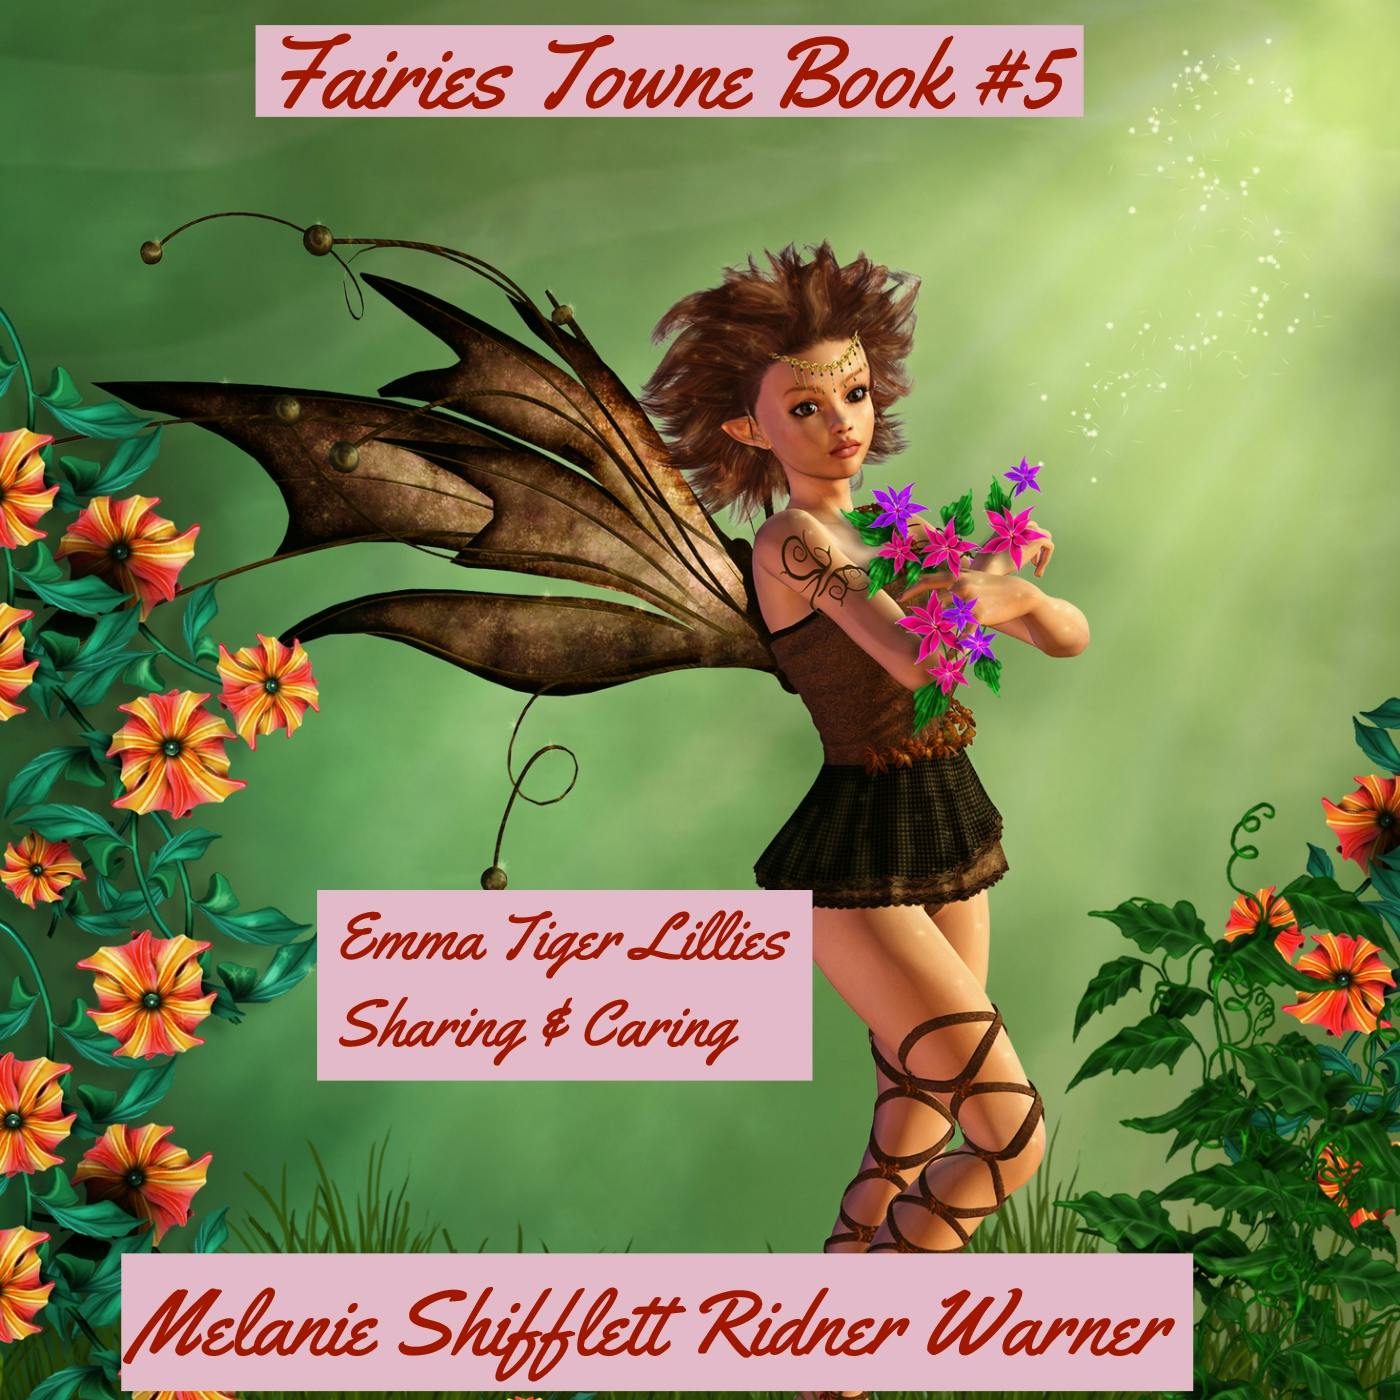 Emma Tiger Lillies: Sharing & Caring - Melanie Shifflett Ridner Warner